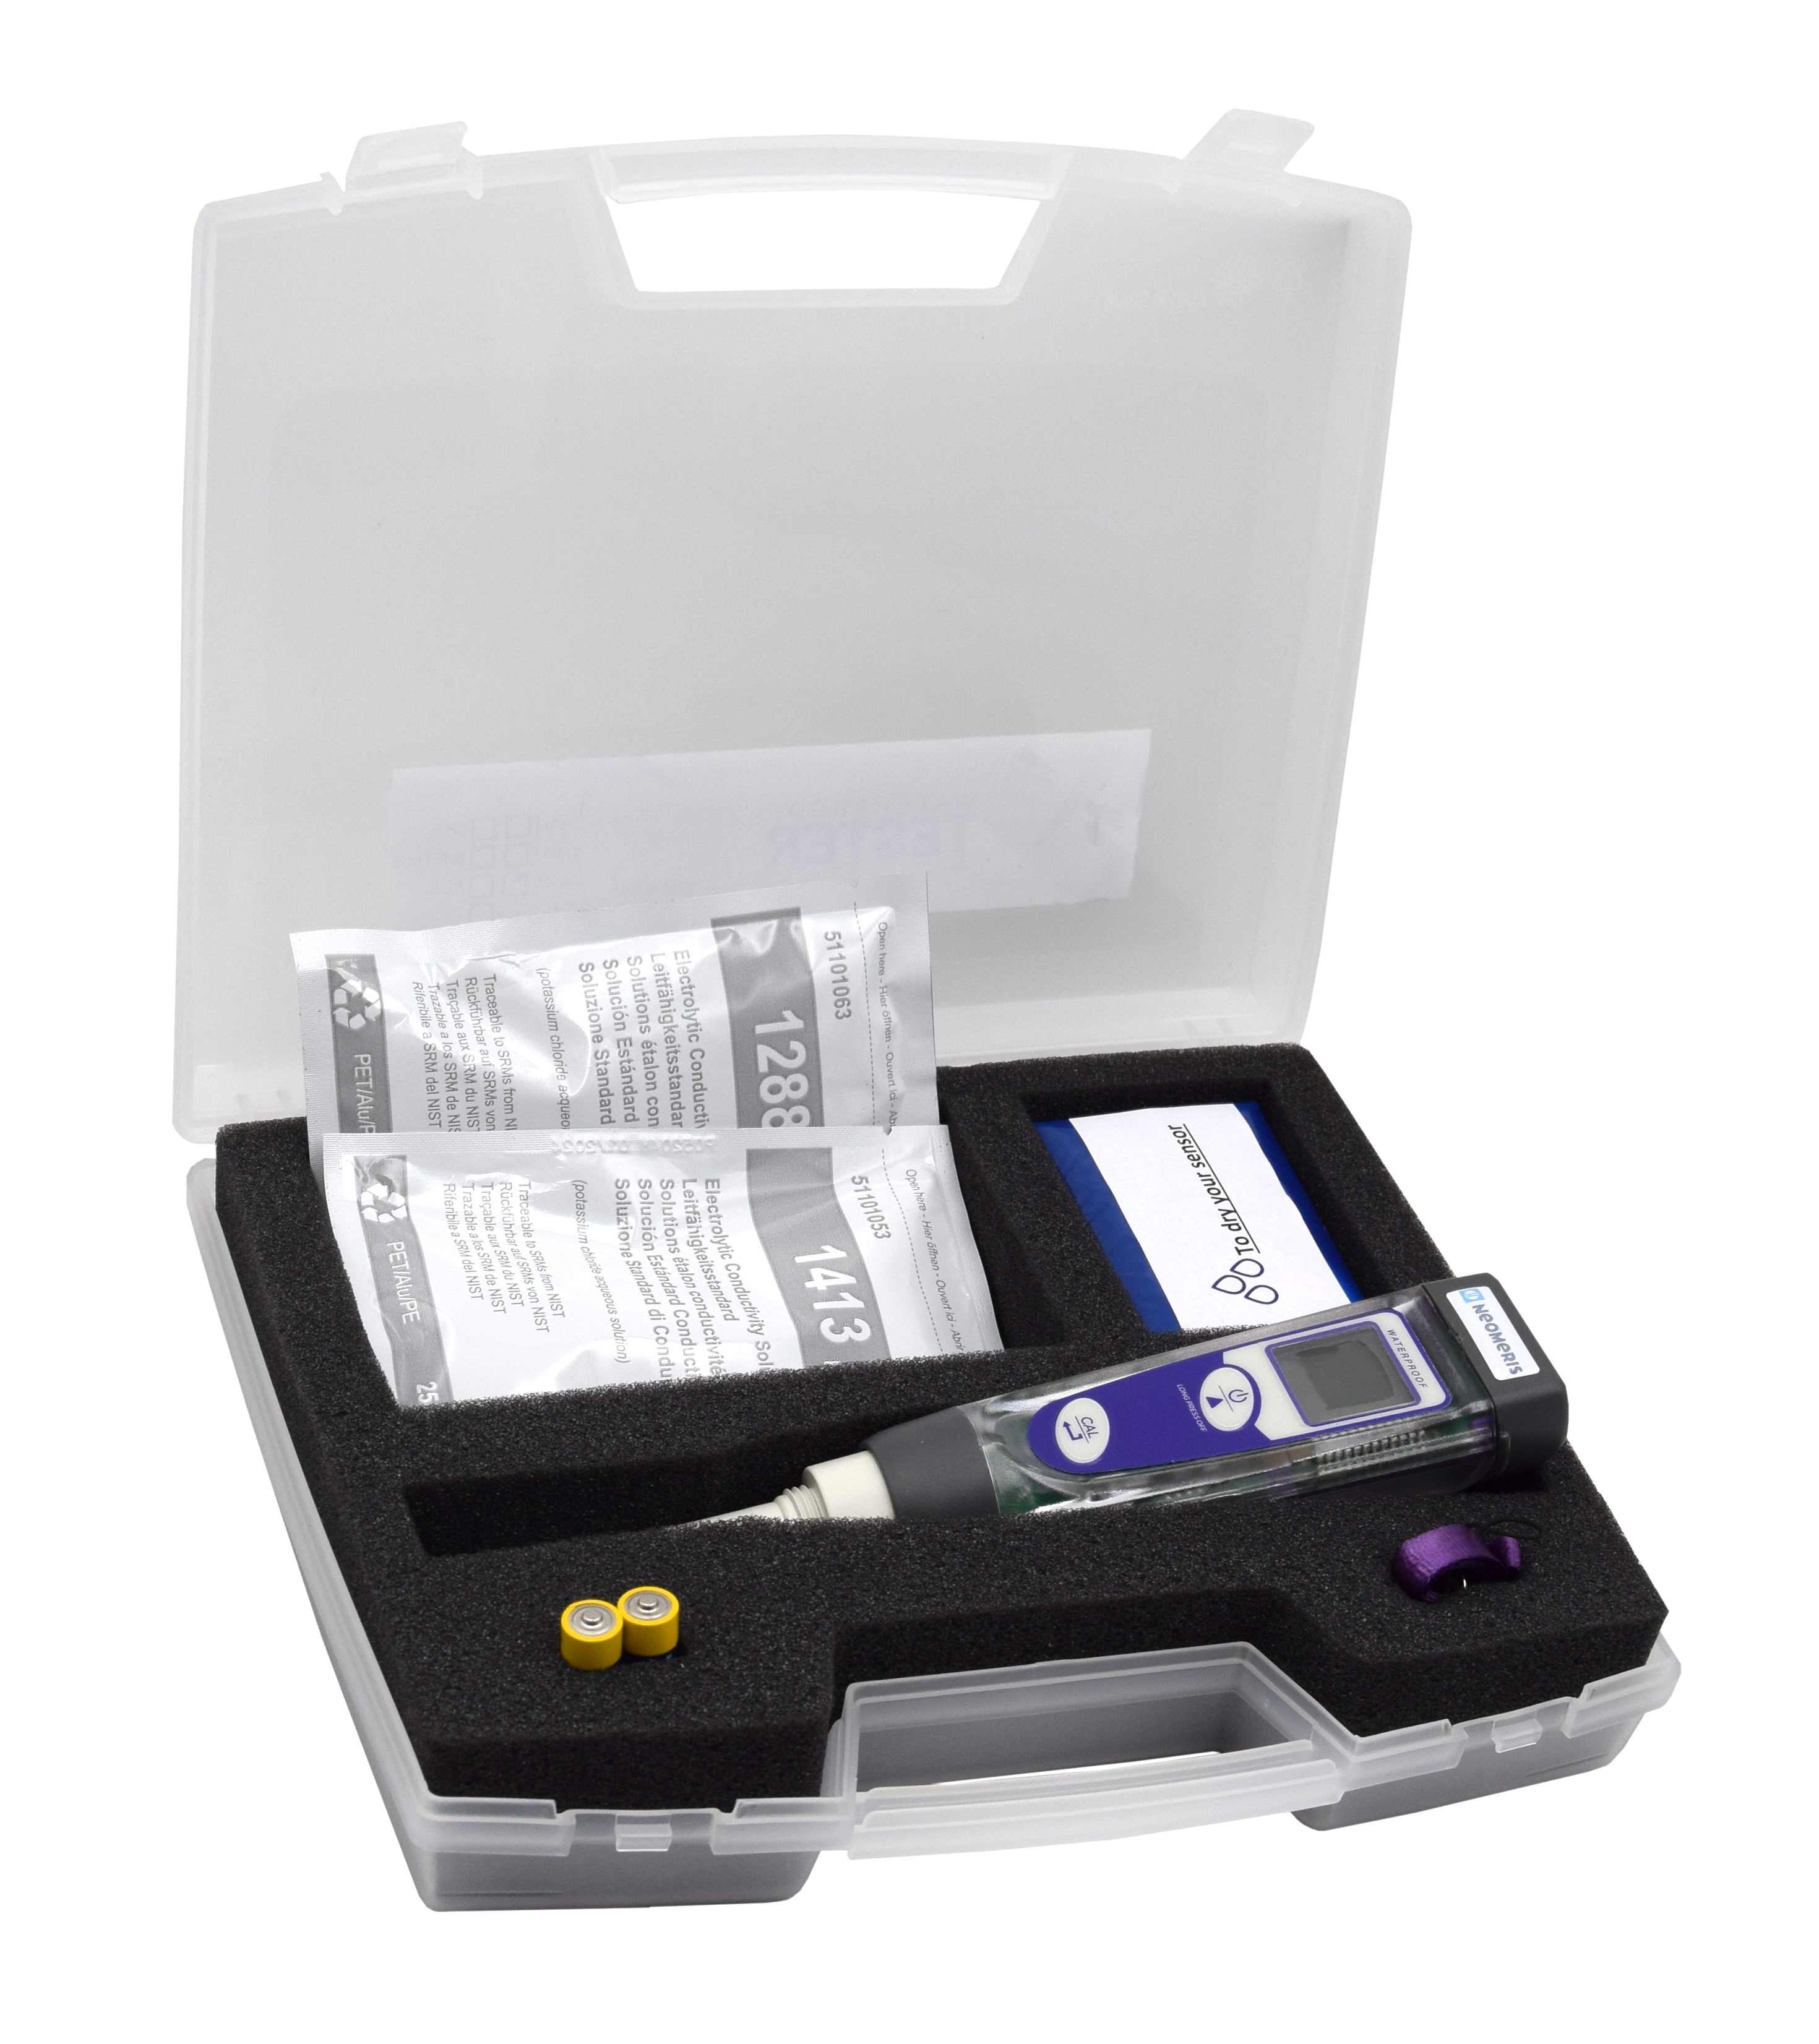 Basic Leitfähigkeit/TDS Pocket-Tester im Messkoffer - Handtester zur Bestimmung des Leitwertes